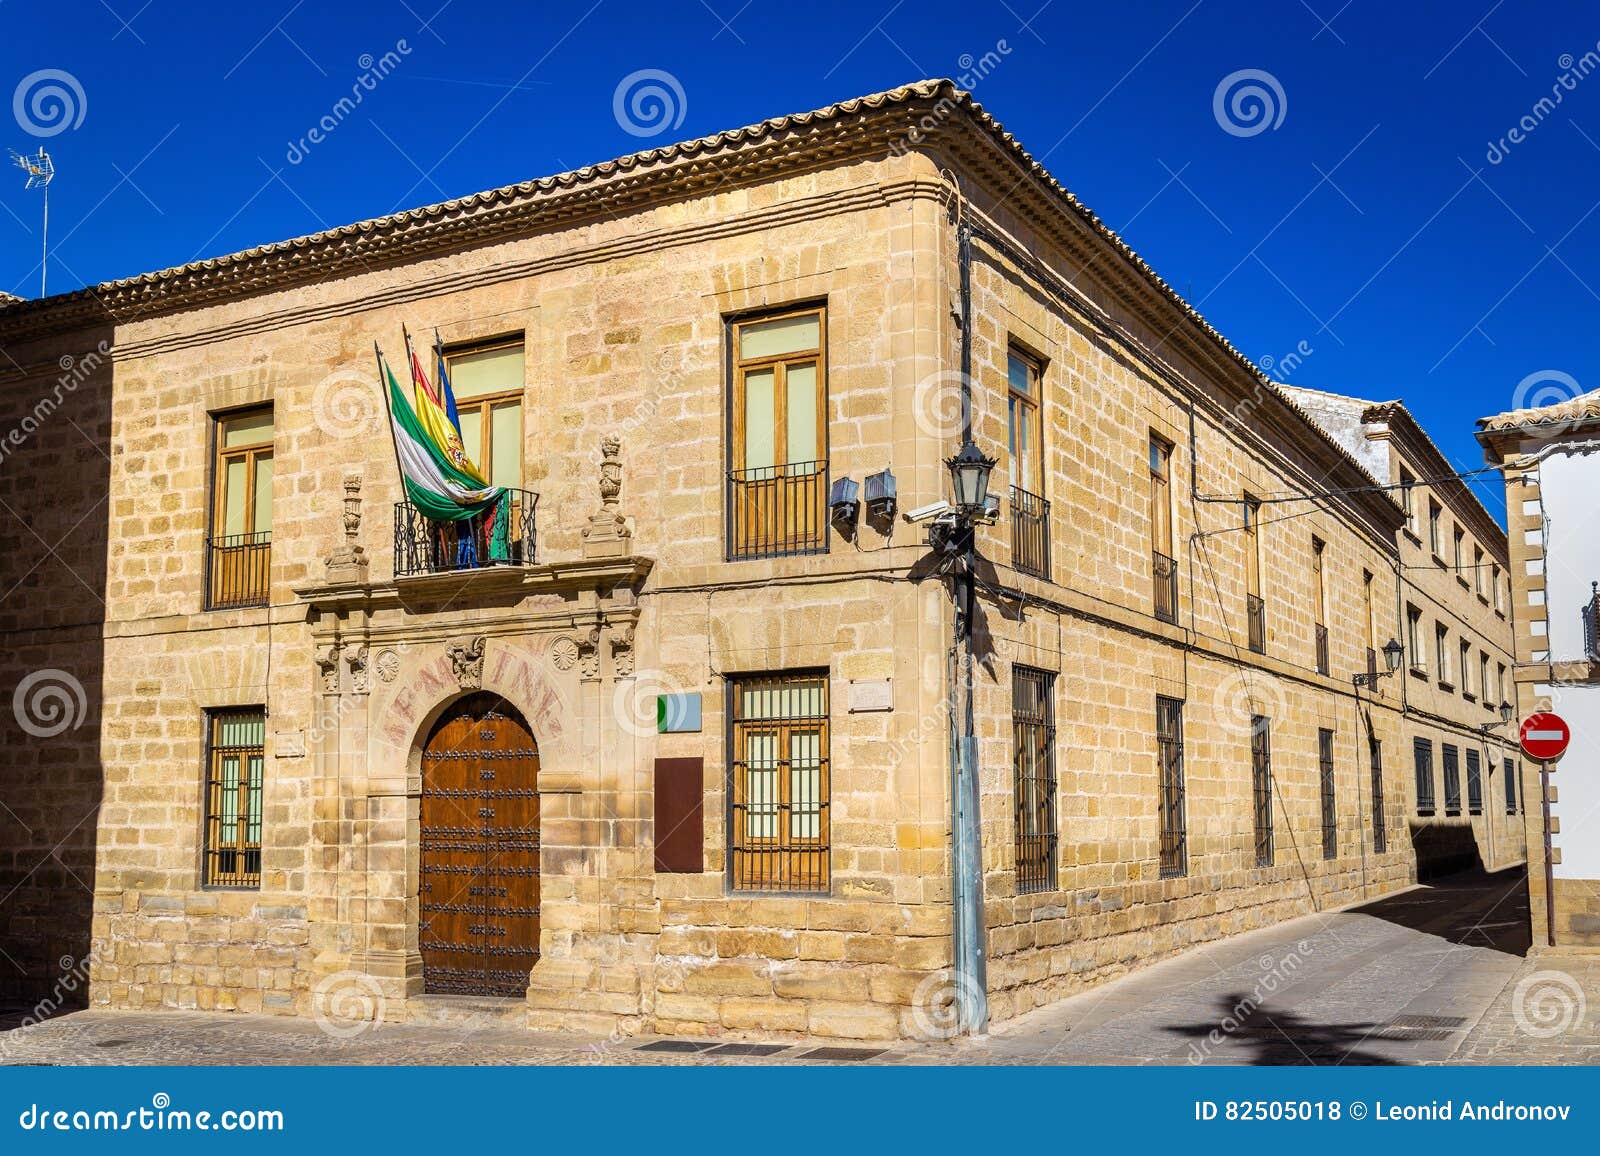 historical buildings in baeza, spain